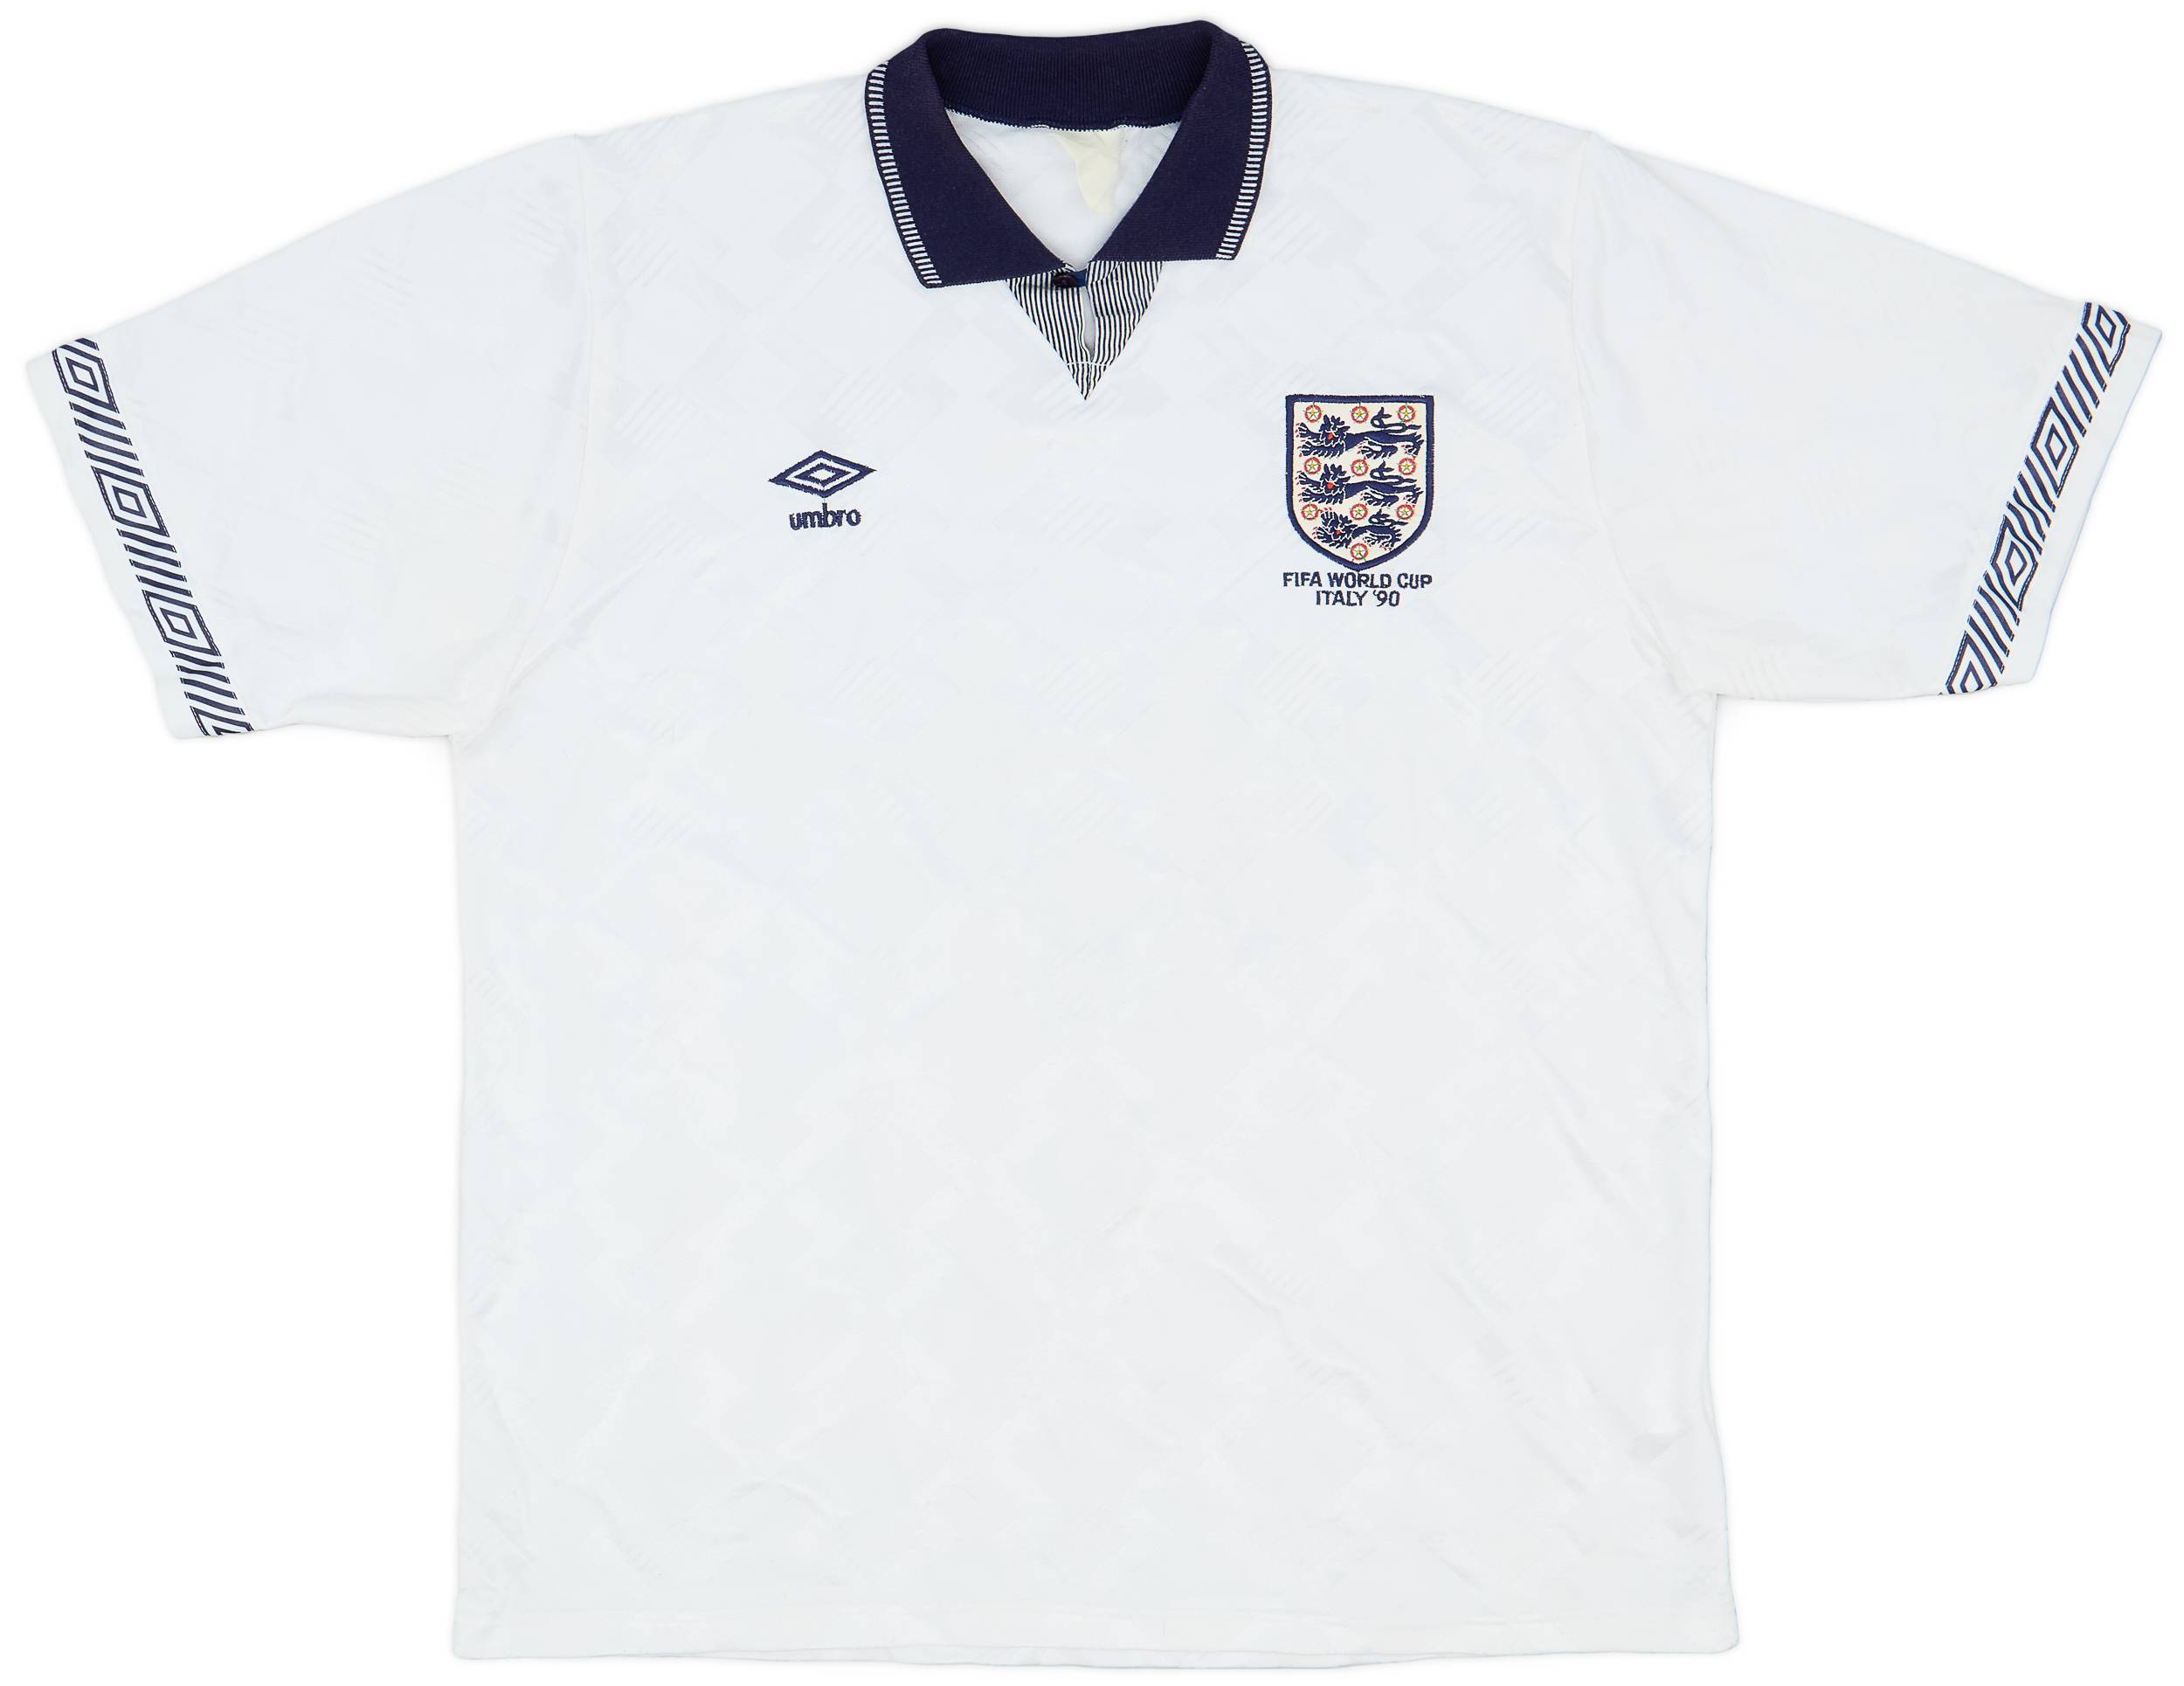 1990-92 England 'World Cup' Home Shirt - 9/10 - (XL)